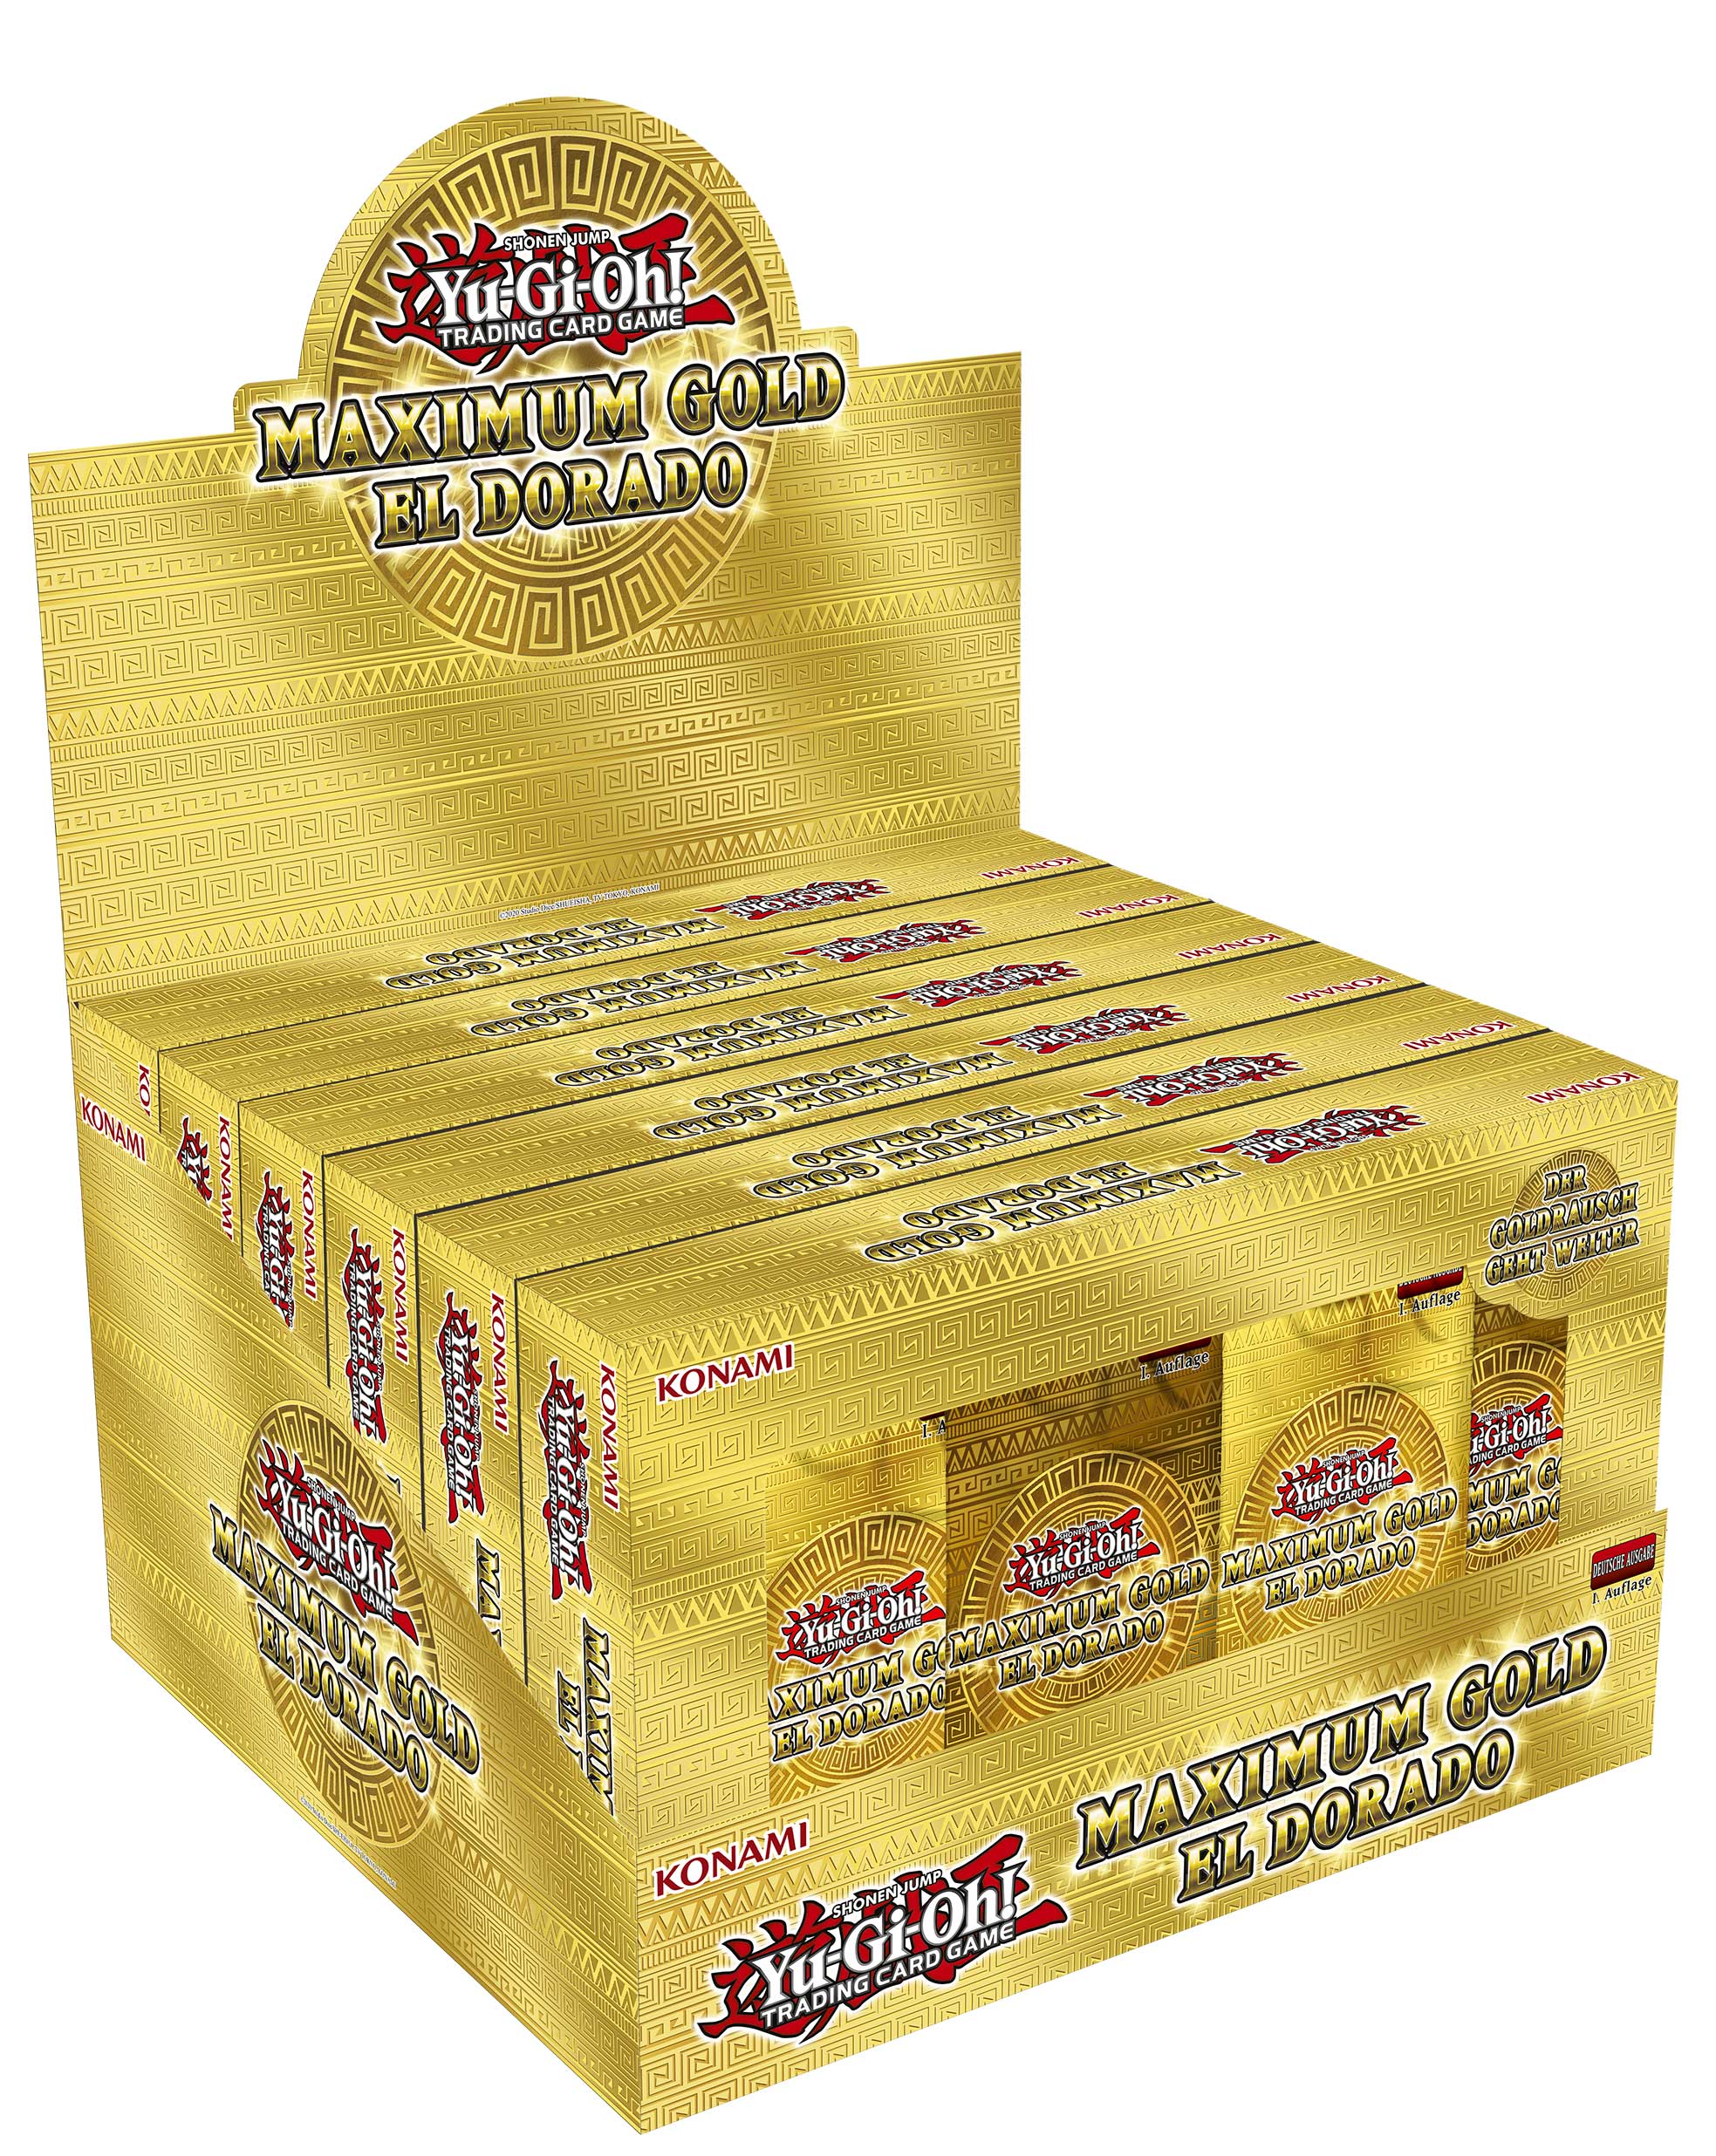 maximum gold el dorado display tuckbox mged yugi yugioh pack karten guenstig billig kaufen deutsch